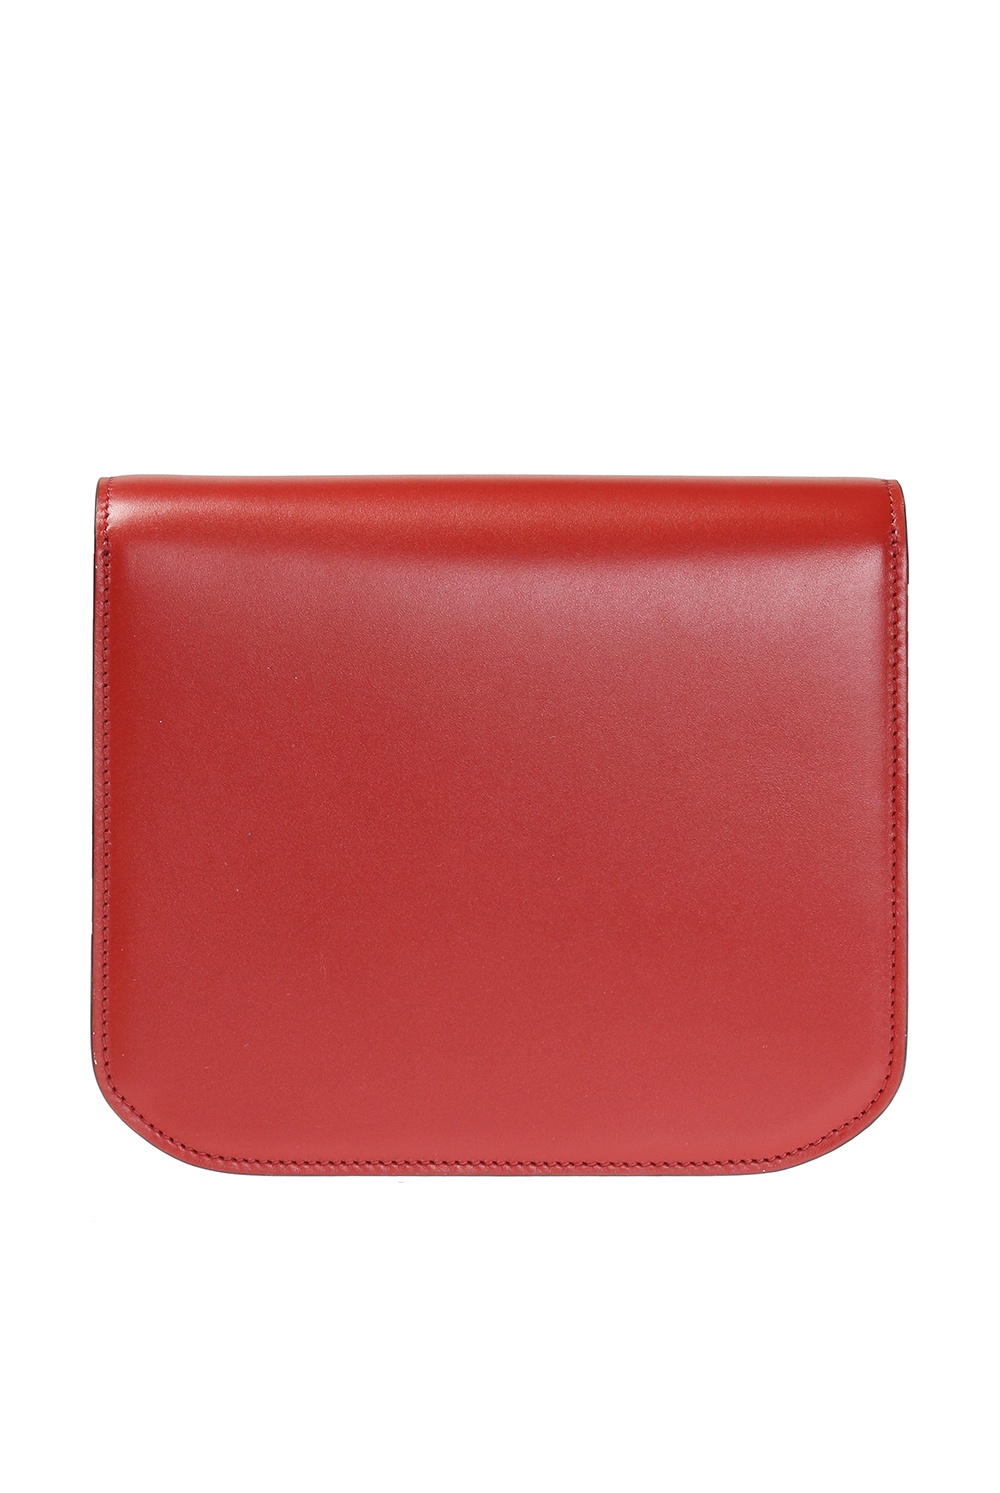 Victoria Beckham 'LIU JO quilted logo-plaque shoulder bag Rosso